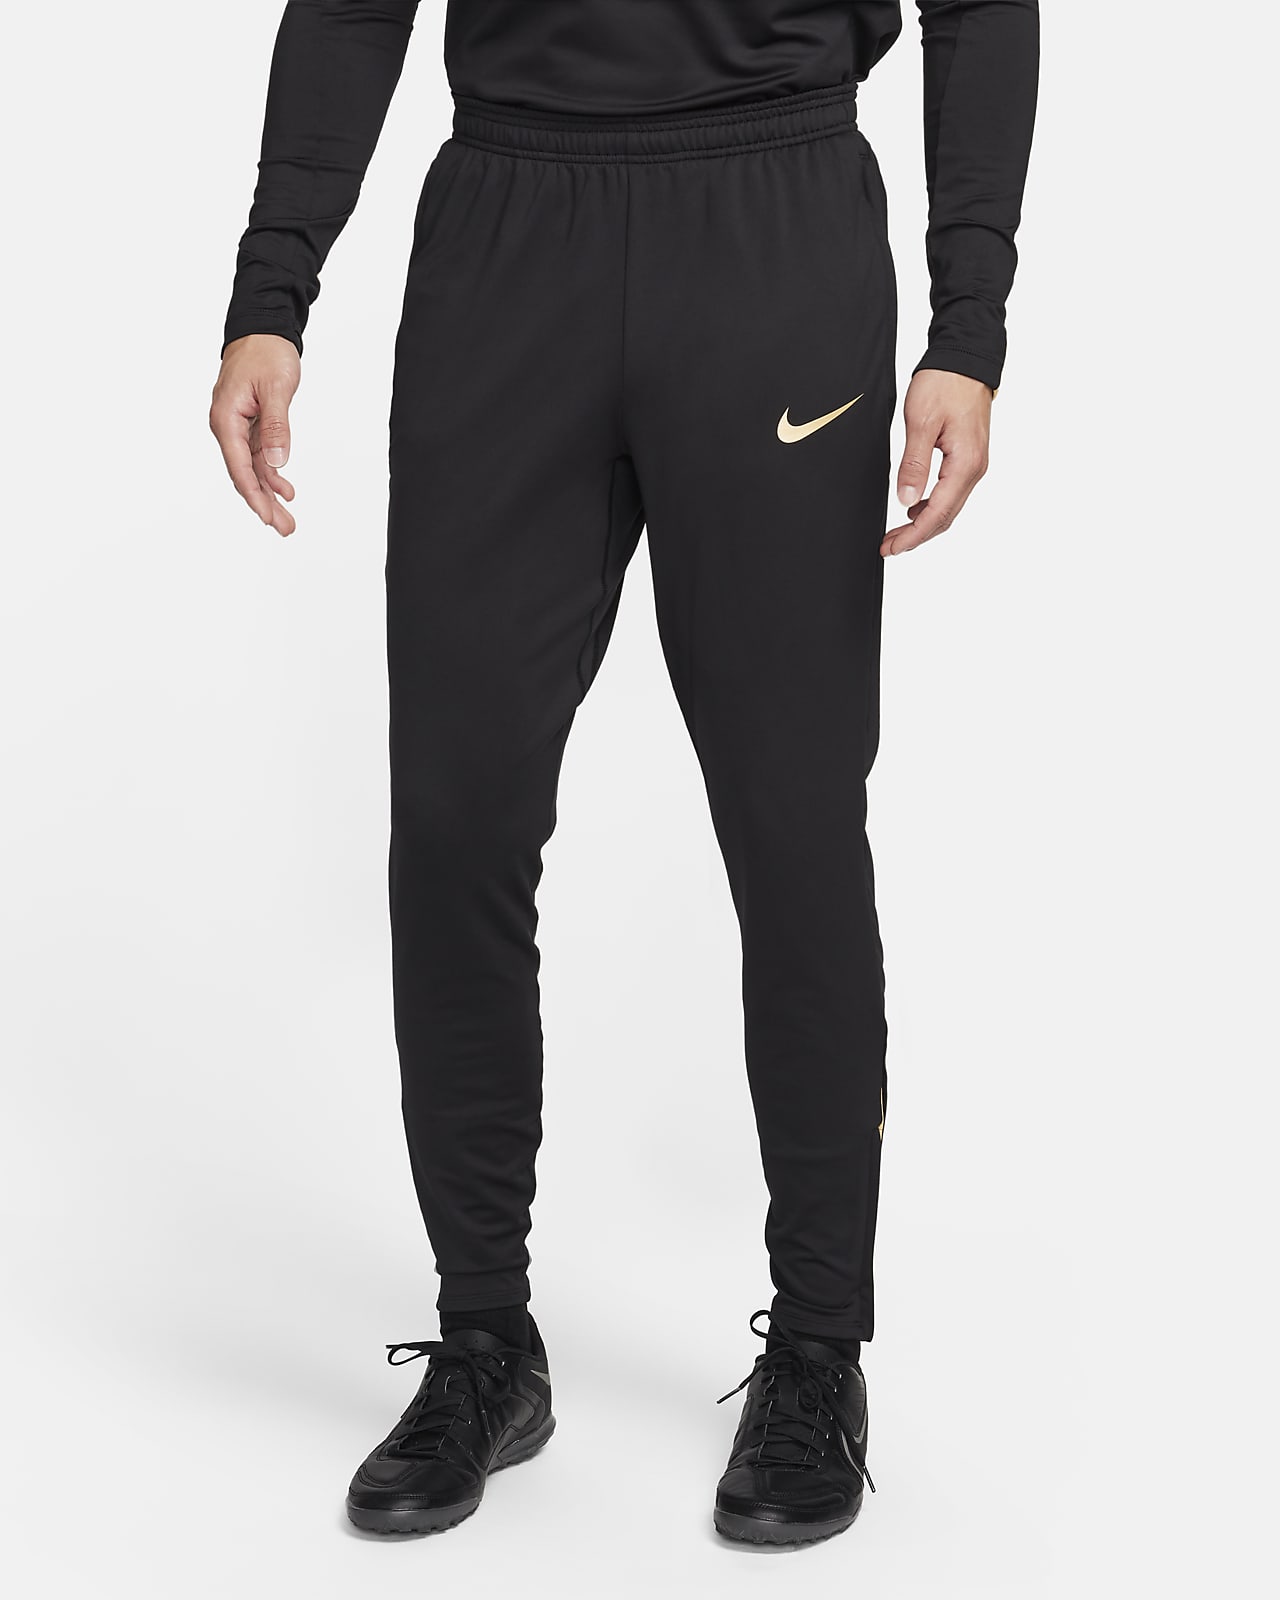 Nike Strike 男款 Dri-FIT 足球長褲